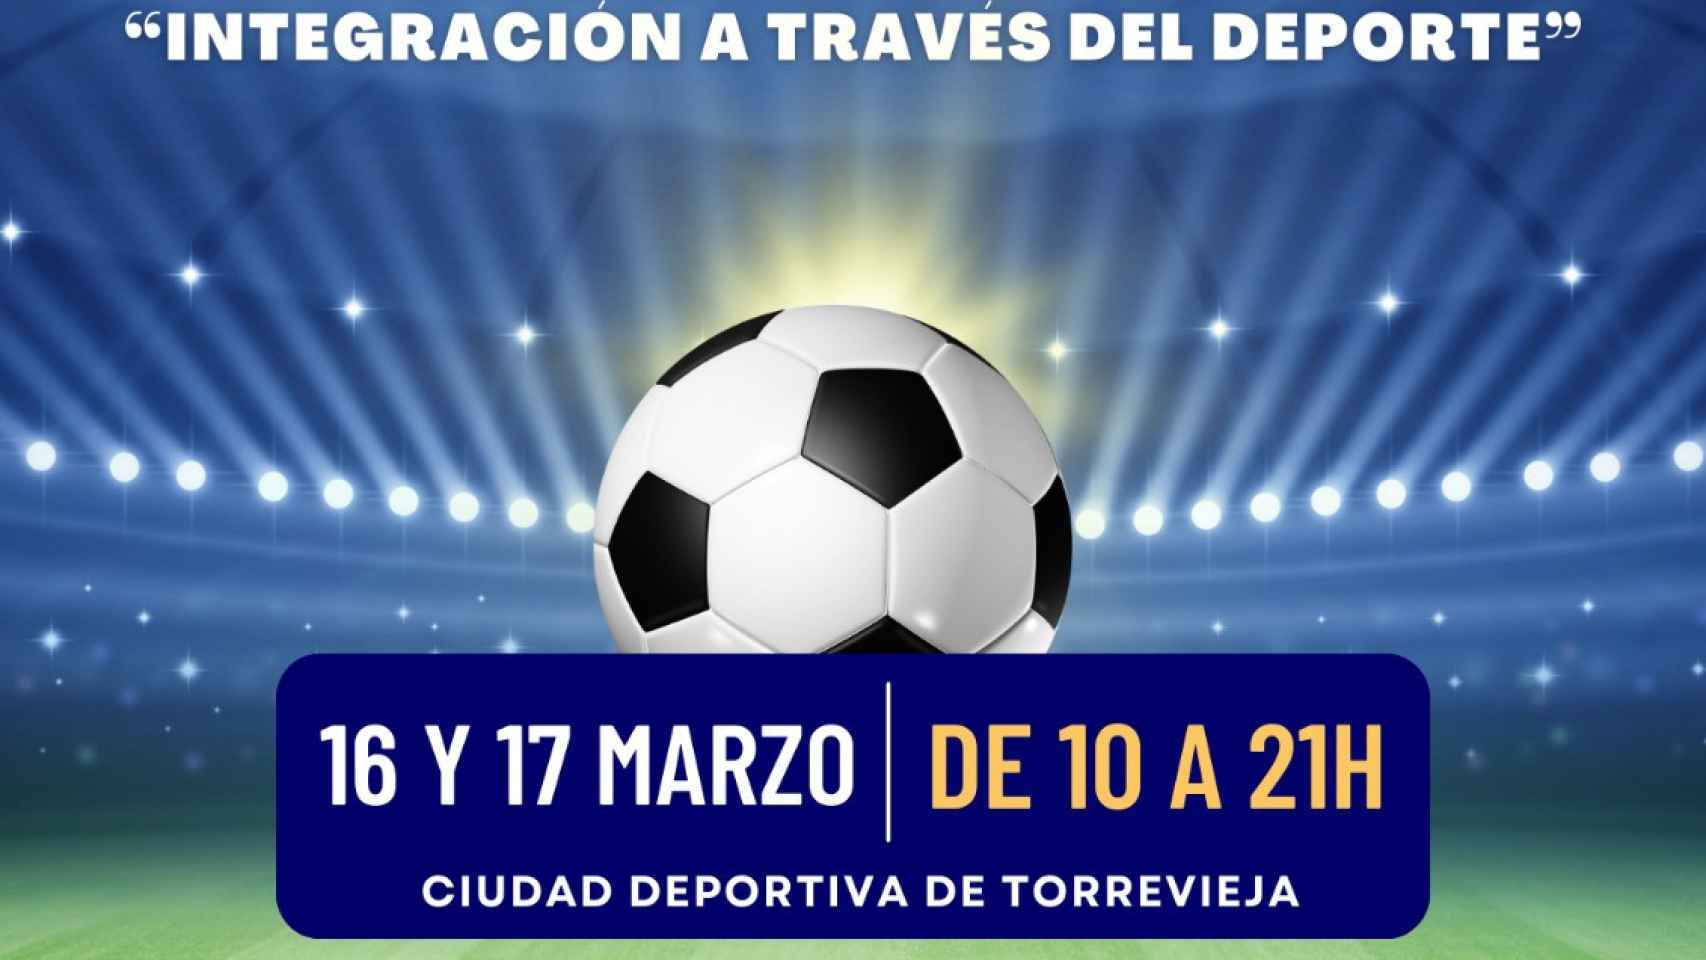 El cartel del II Mundialito de Fútbol de Torrevieja.